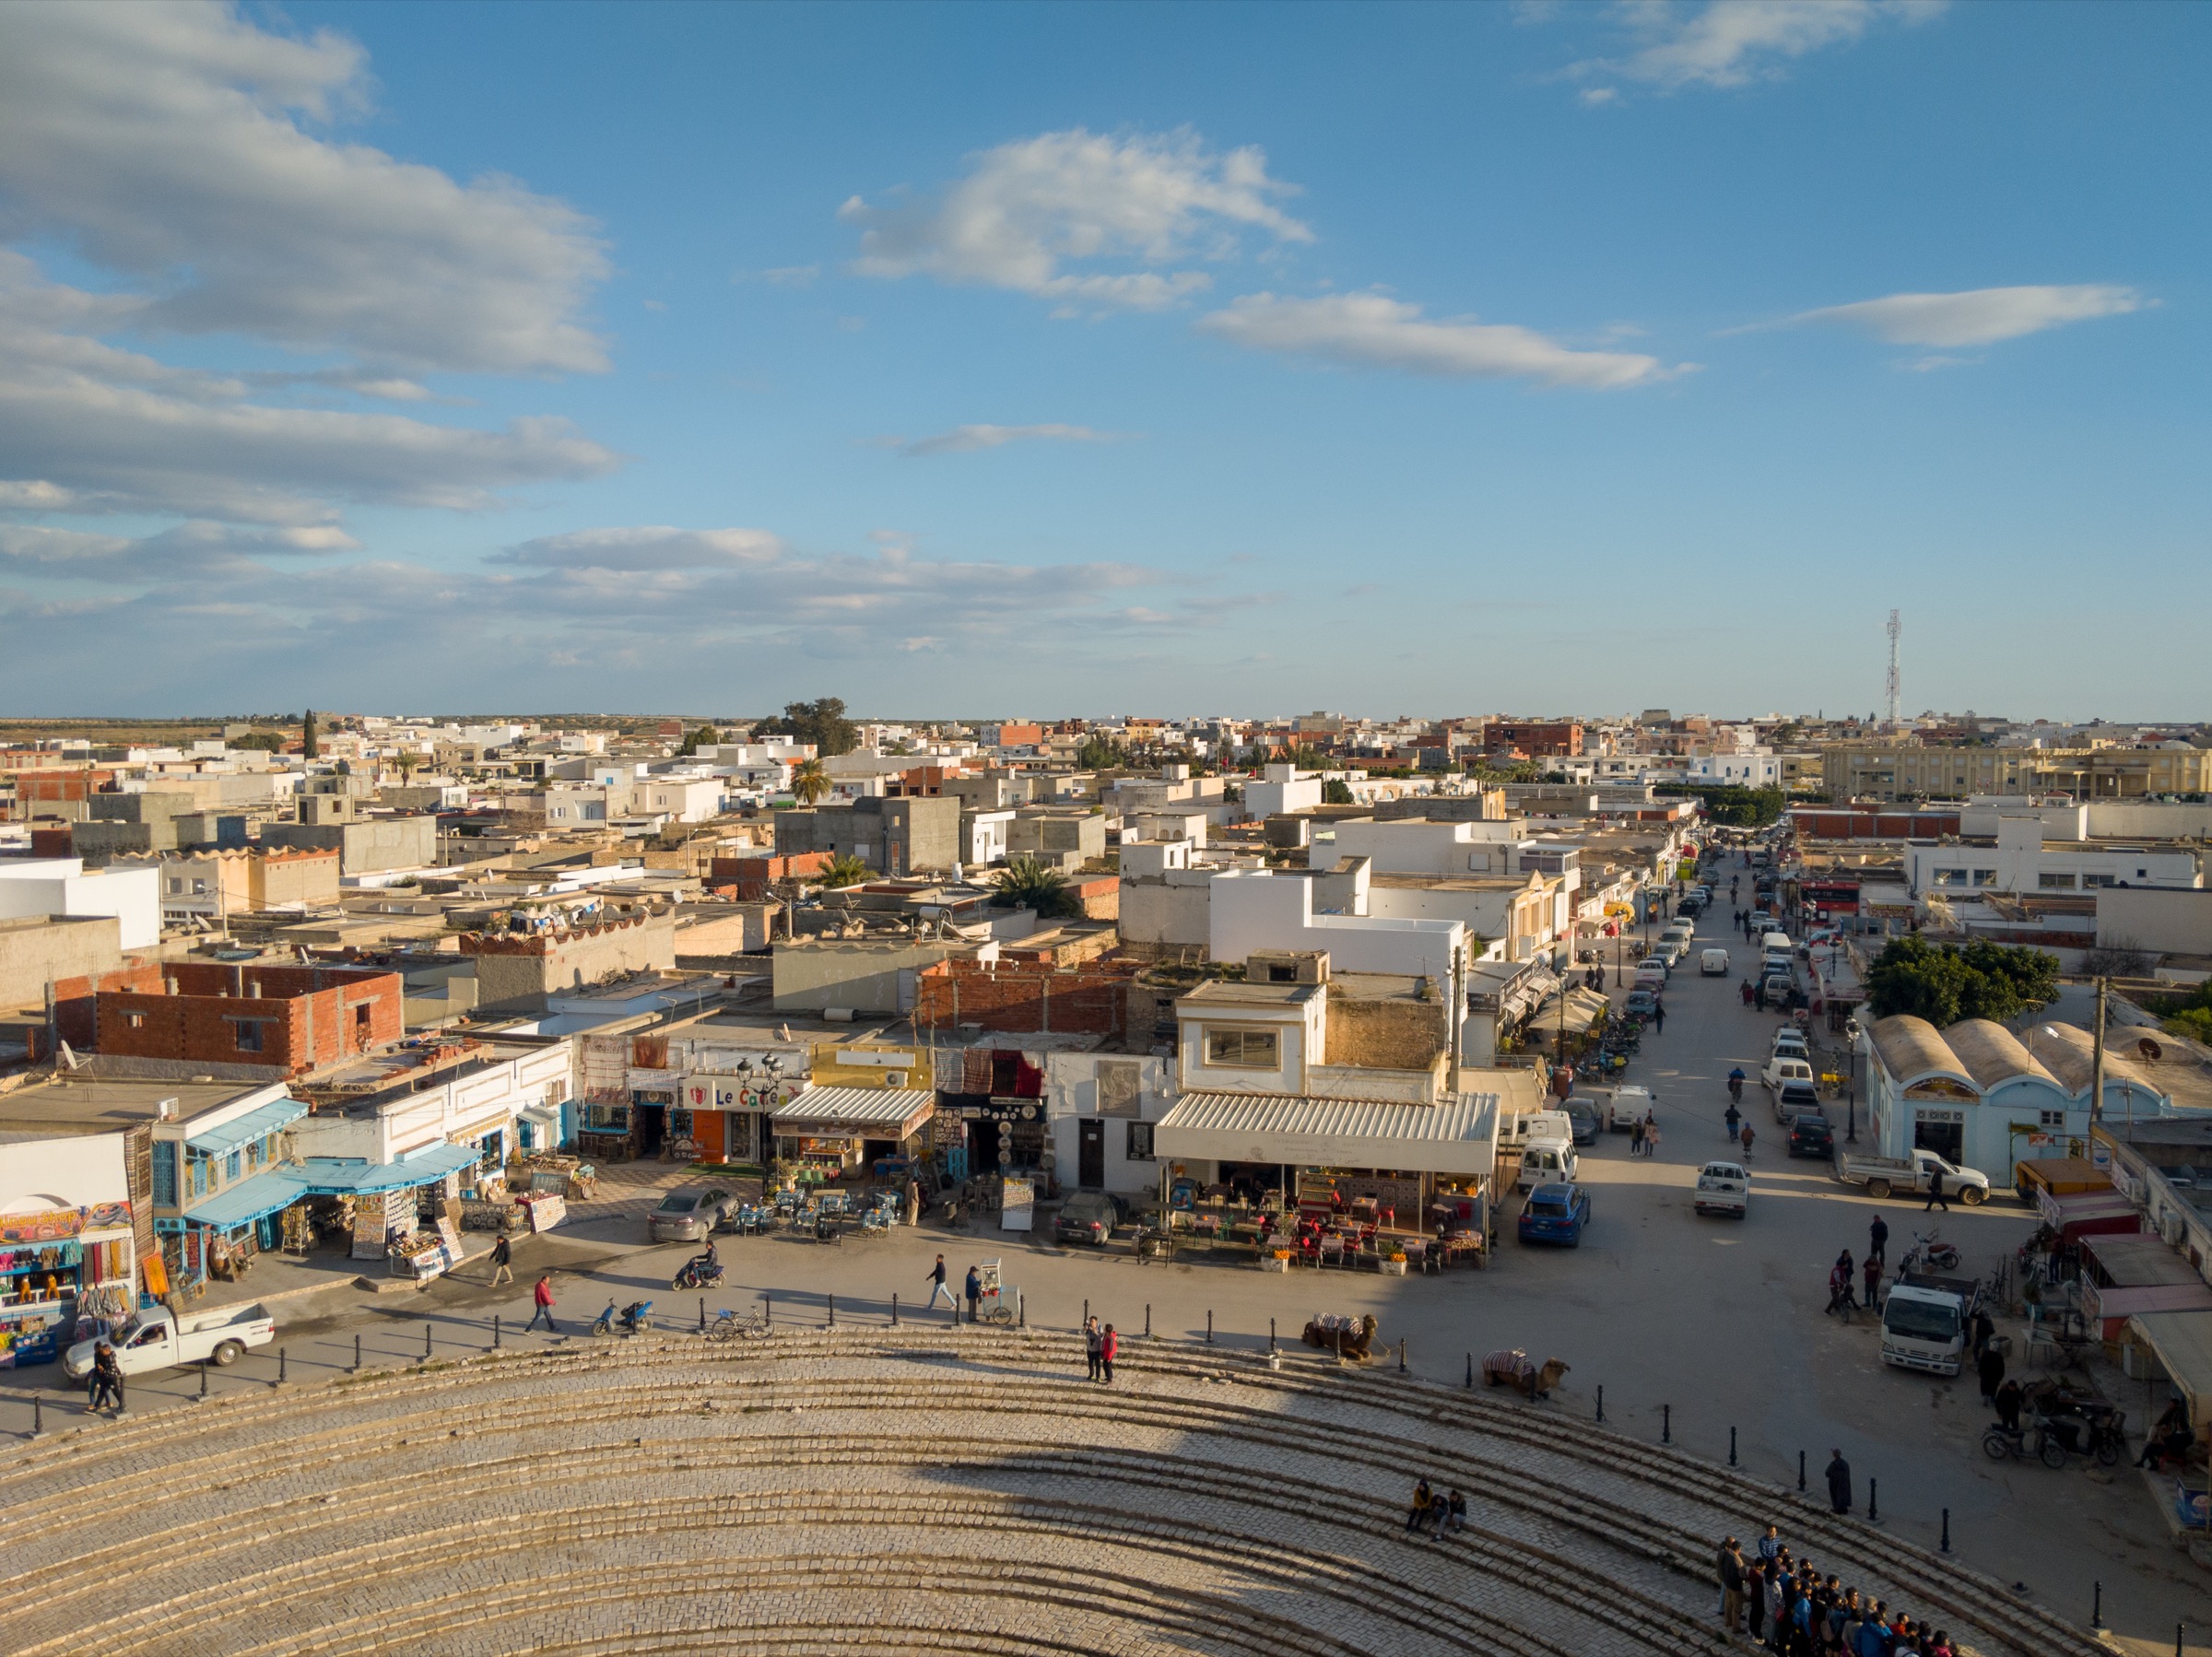 El Jem, Tunisia